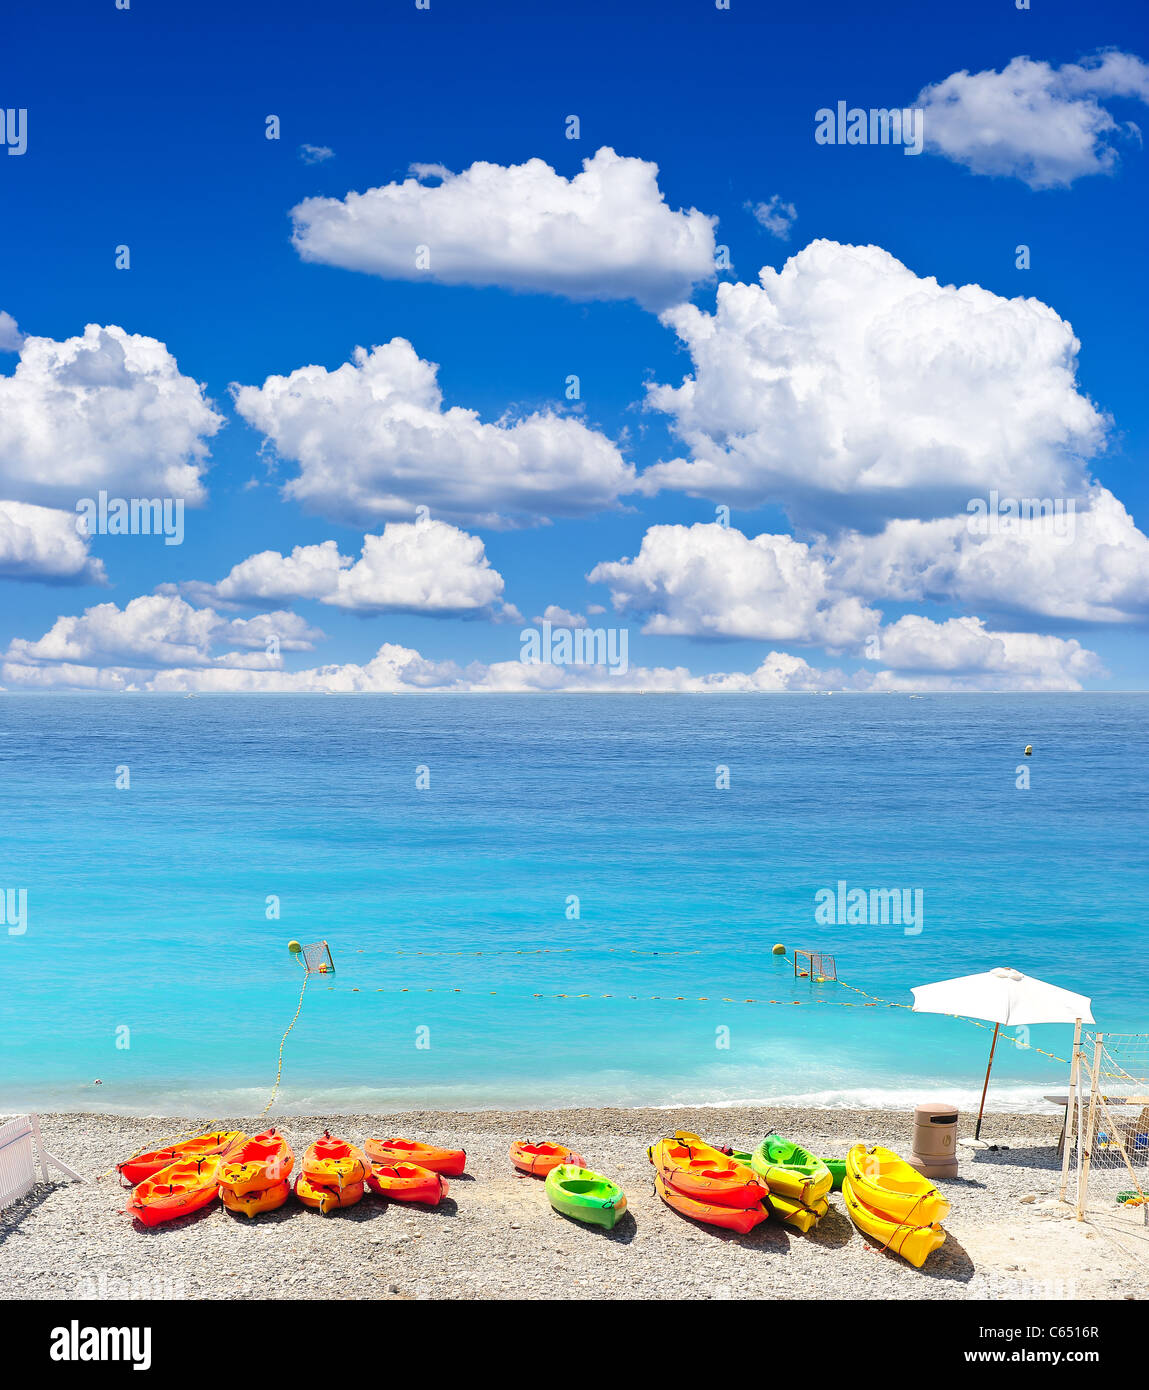 bunte Boote am Strand von Nizza. Urlaub-Hintergrund Stockfoto